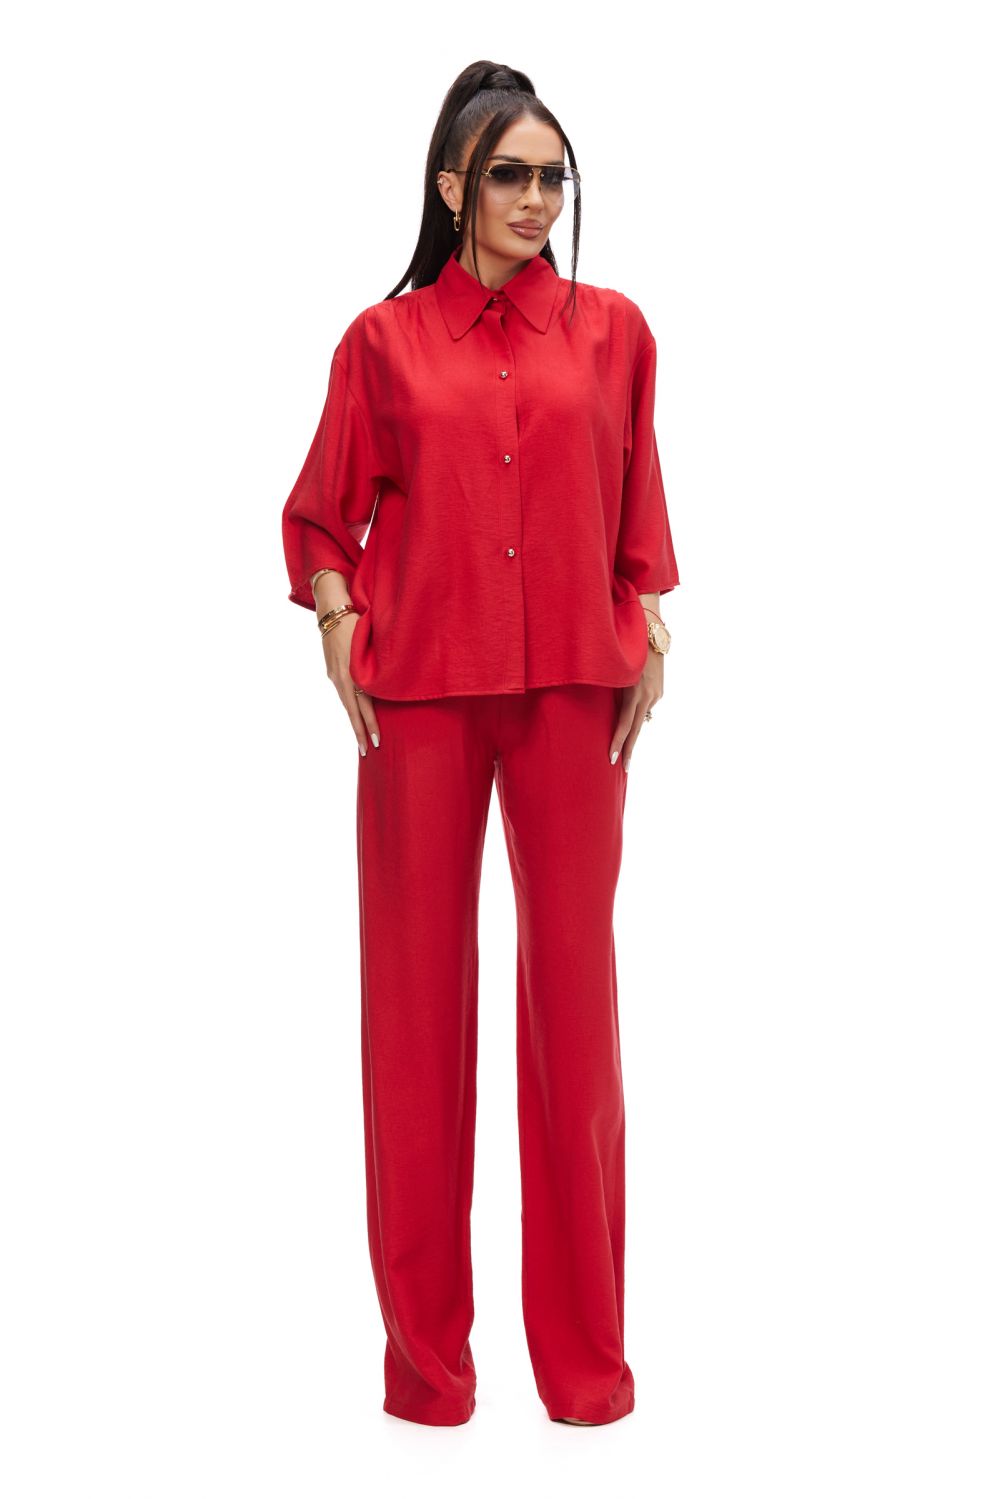 Sineky Bogas red casual ladies suit